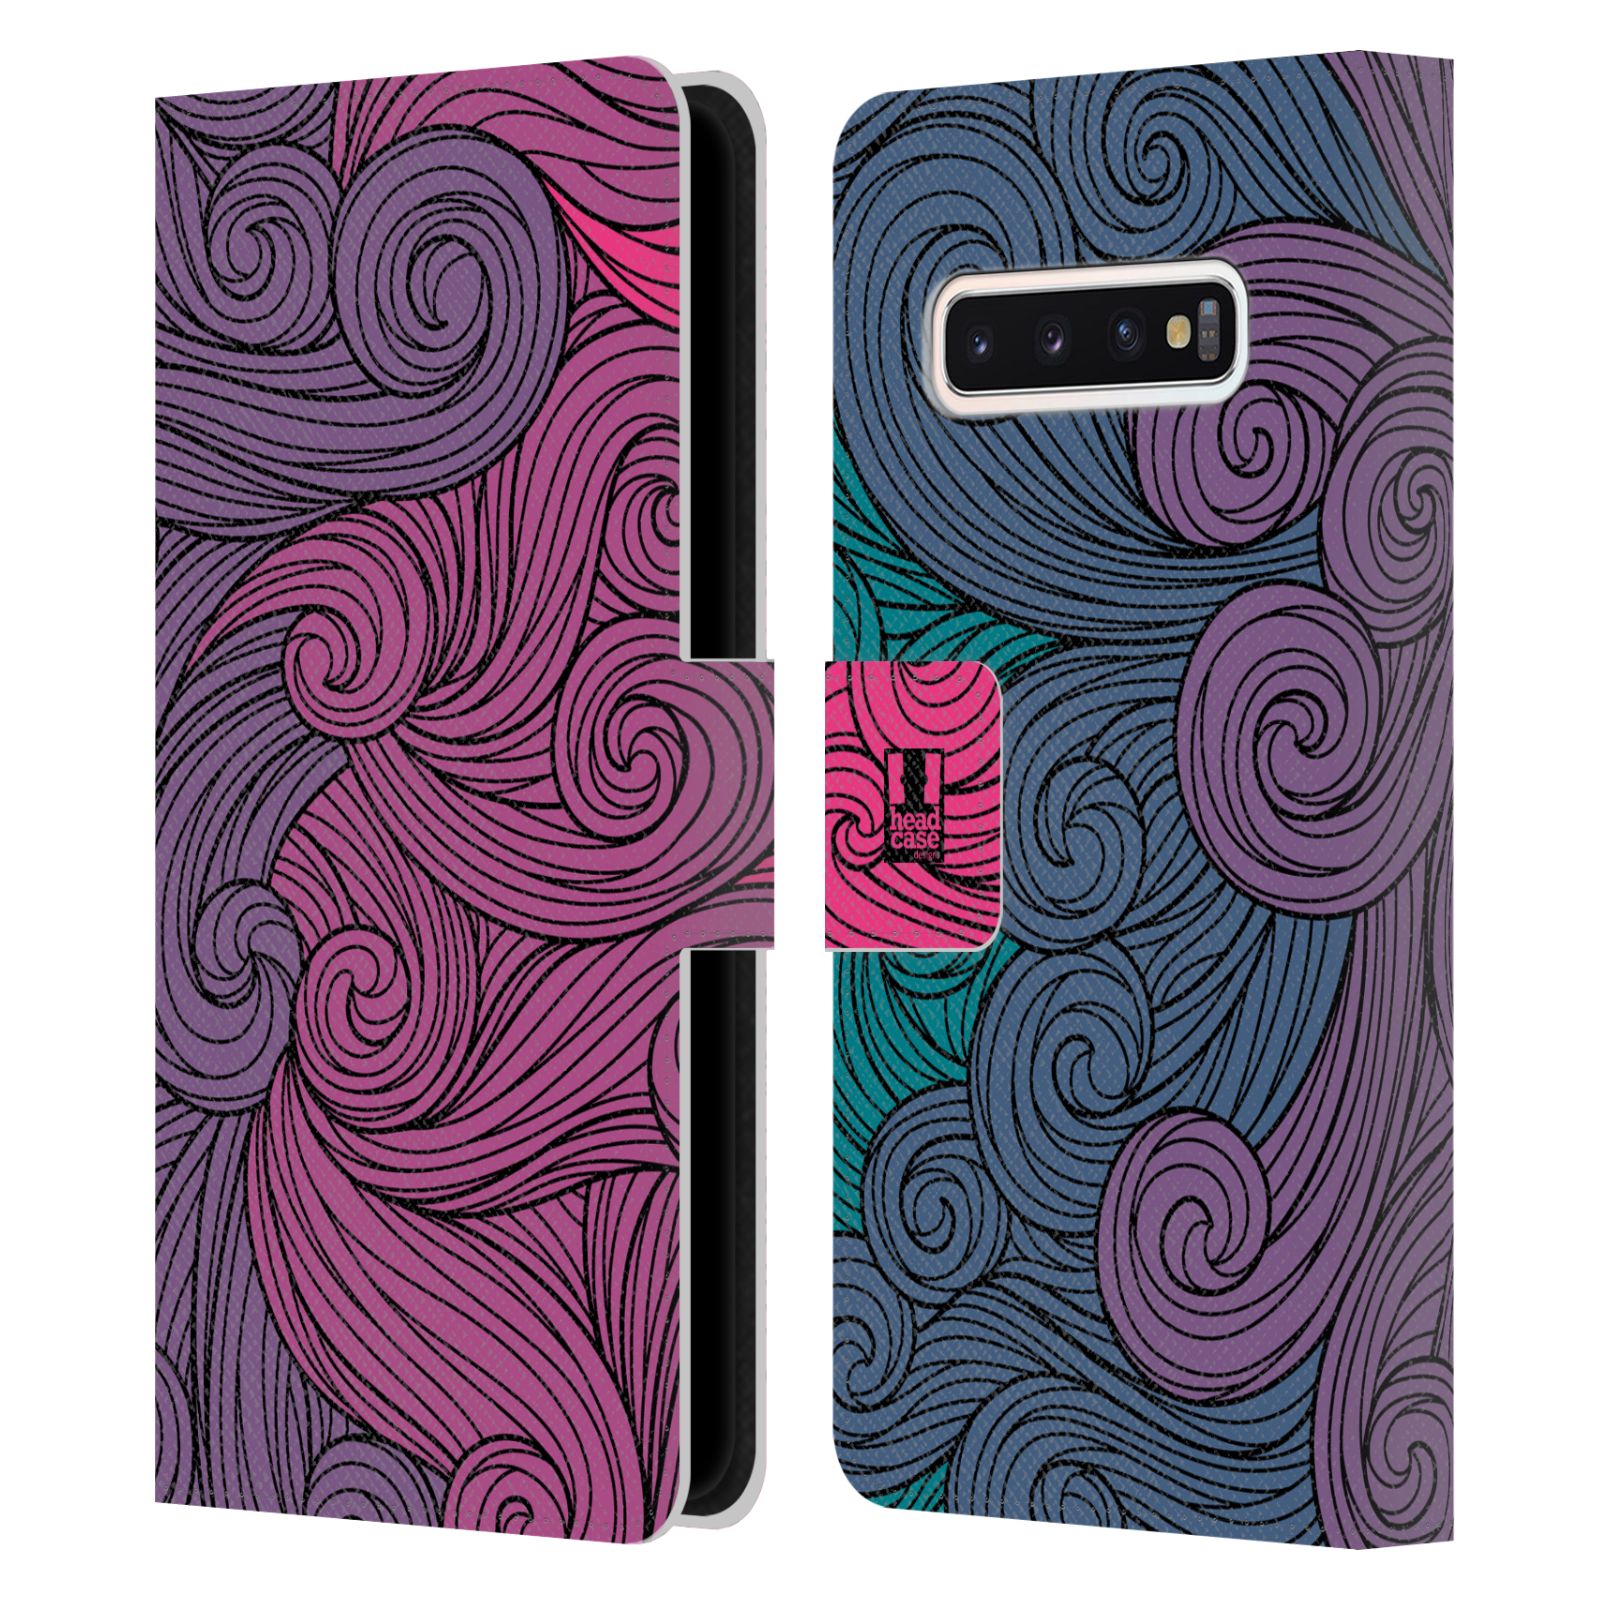 Pouzdro HEAD CASE na mobil Samsung Galaxy S10 barevné vlny růžová a modrá